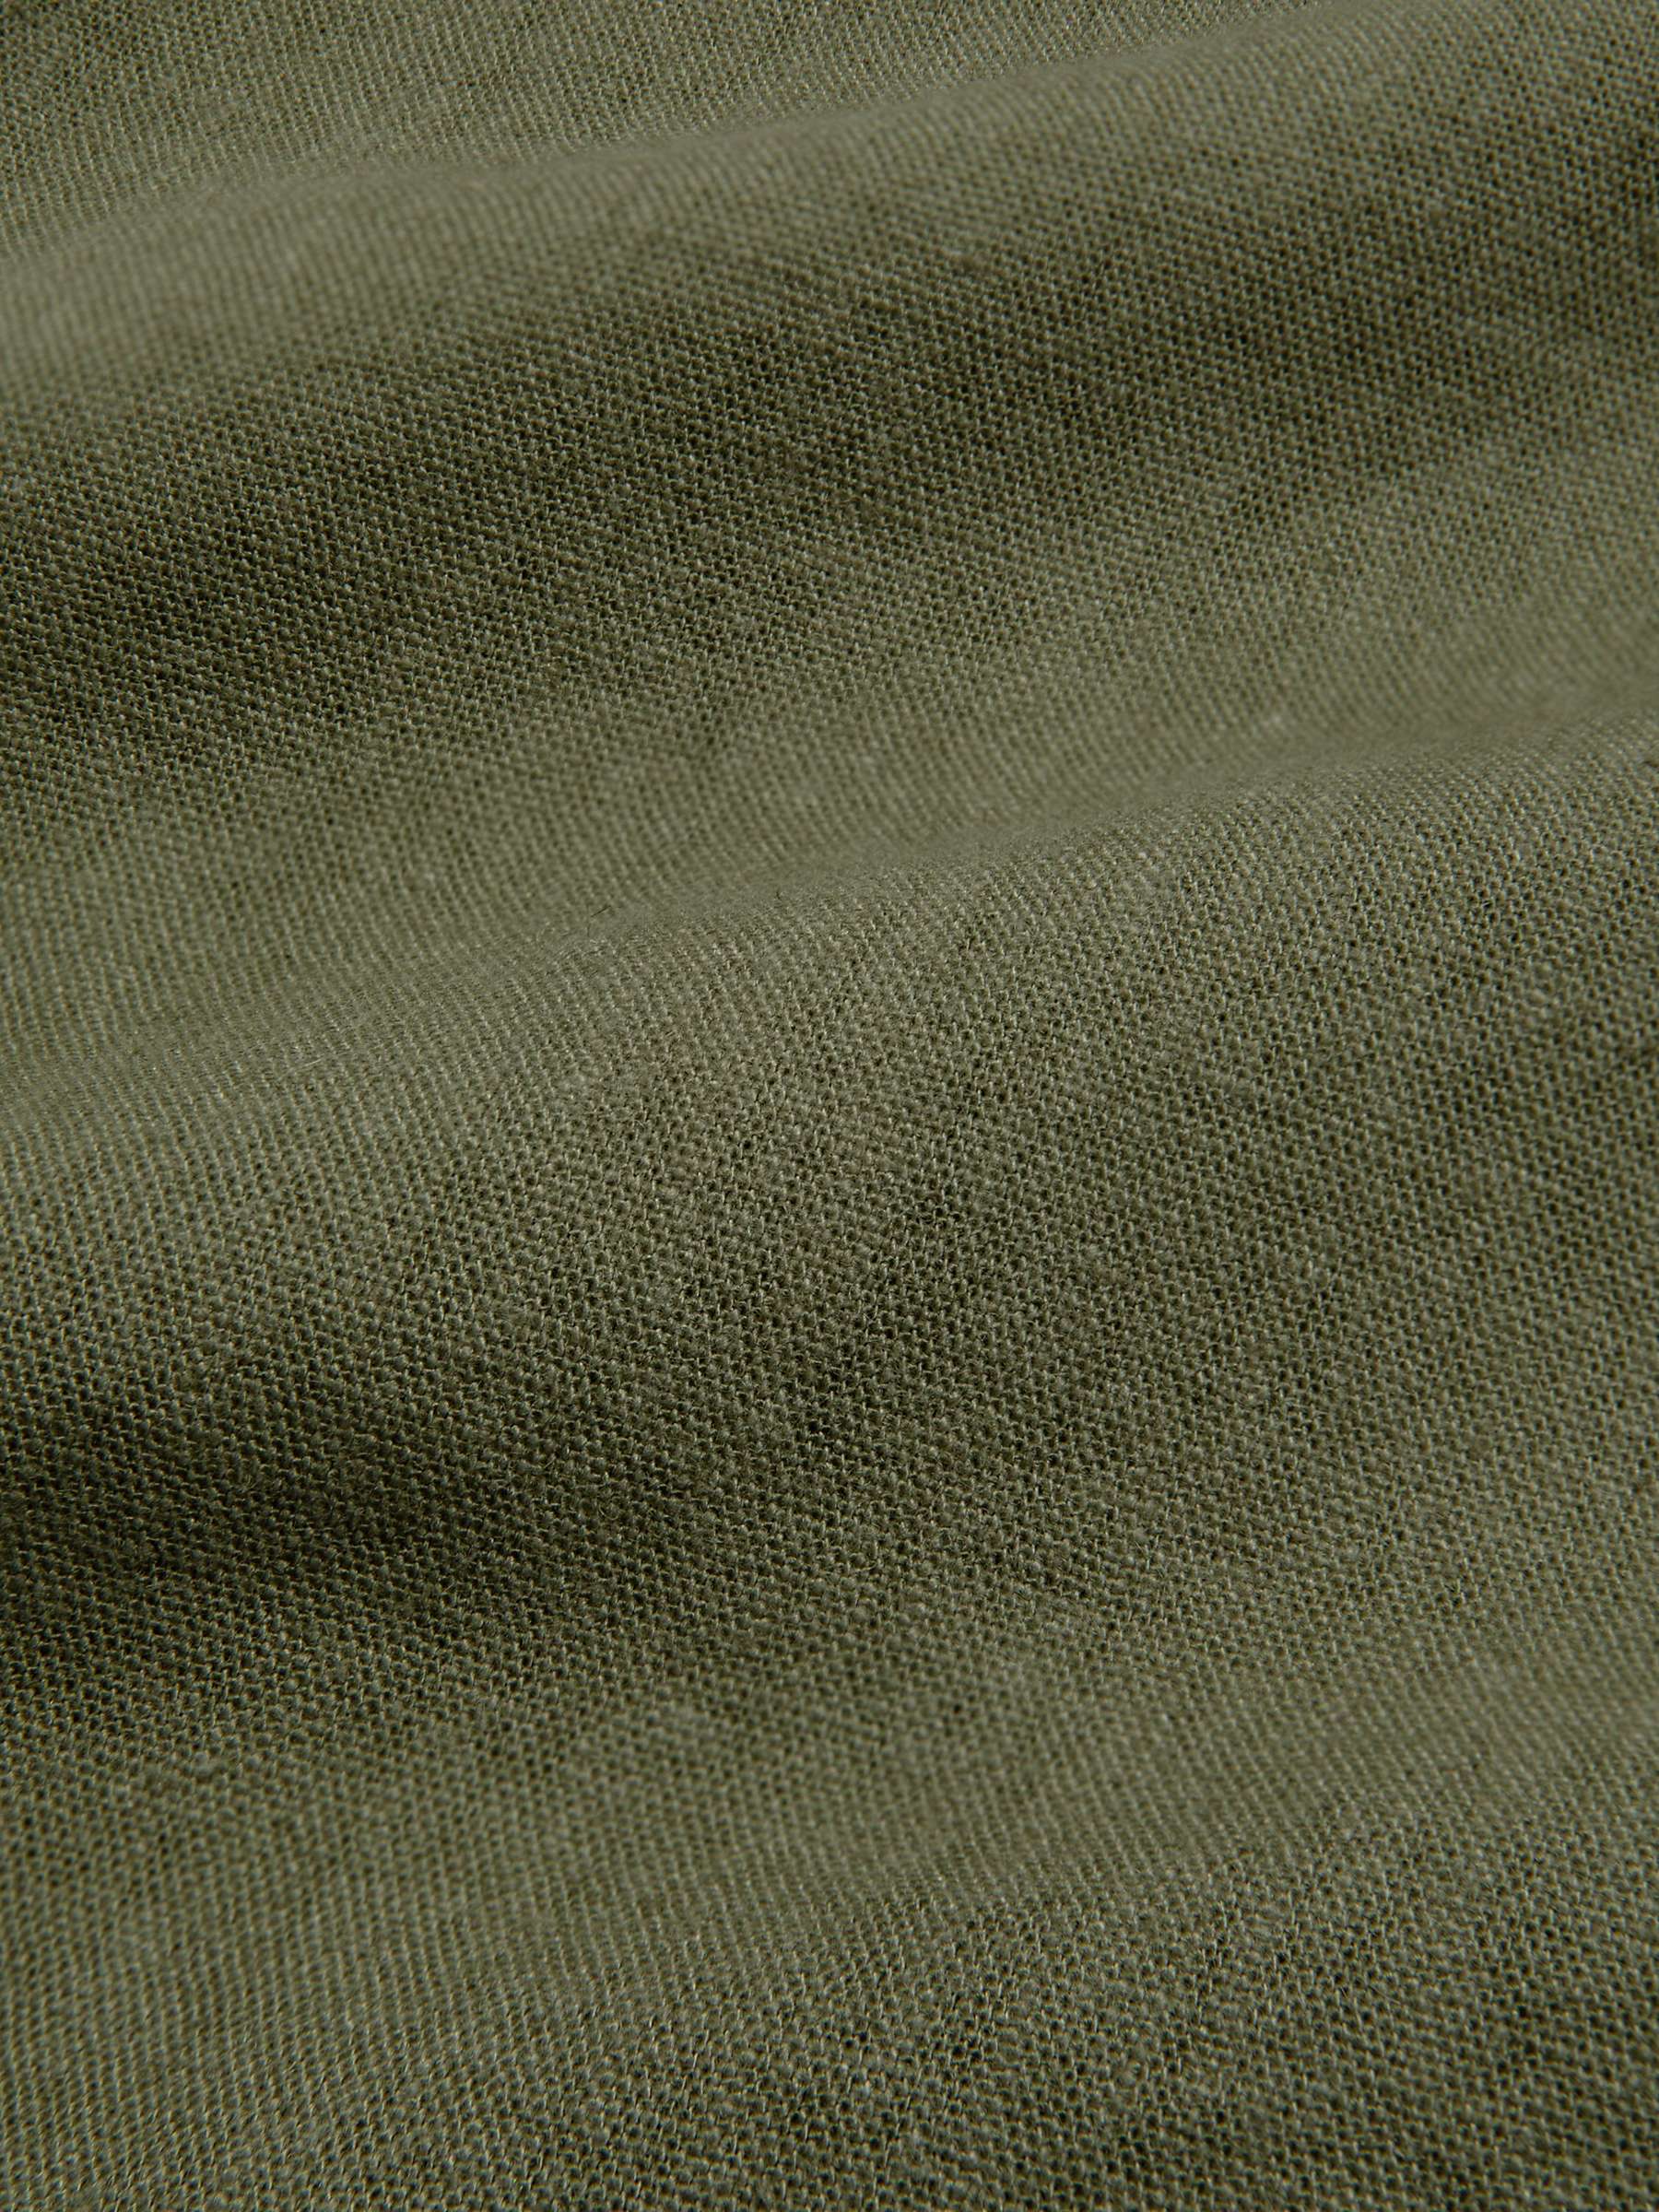 Buy Chelsea Peers Linen Blend Short Sleeve Shirt, Khaki Online at johnlewis.com